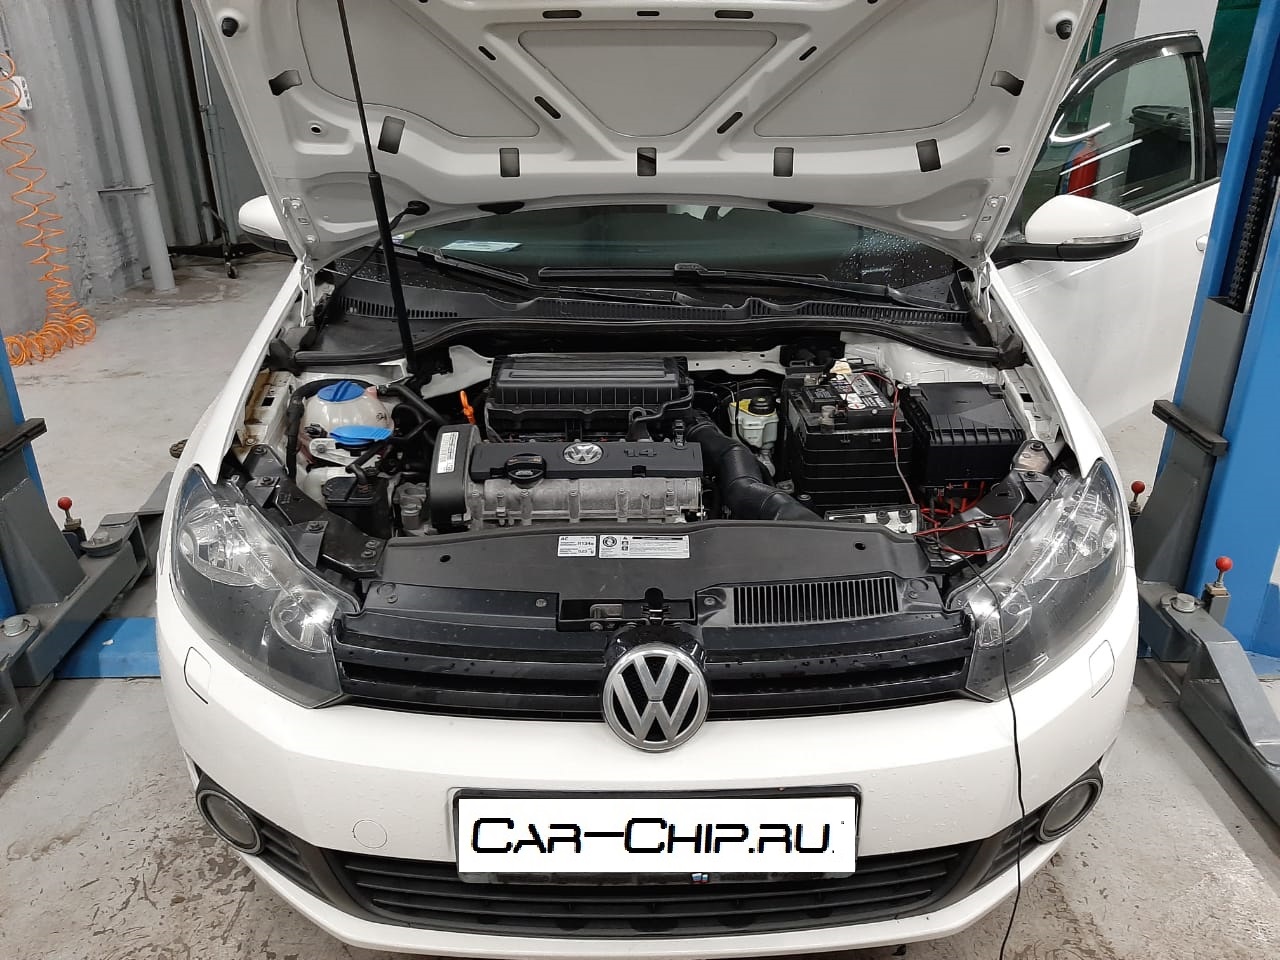 оптимизация штатного ПО, перевод на евро2 Volkswagen Golf 1.4MPI 2012 г.в. CGGA 80л.с, использовалась программа от НПО АДАКТ на базе последней заводской версии.